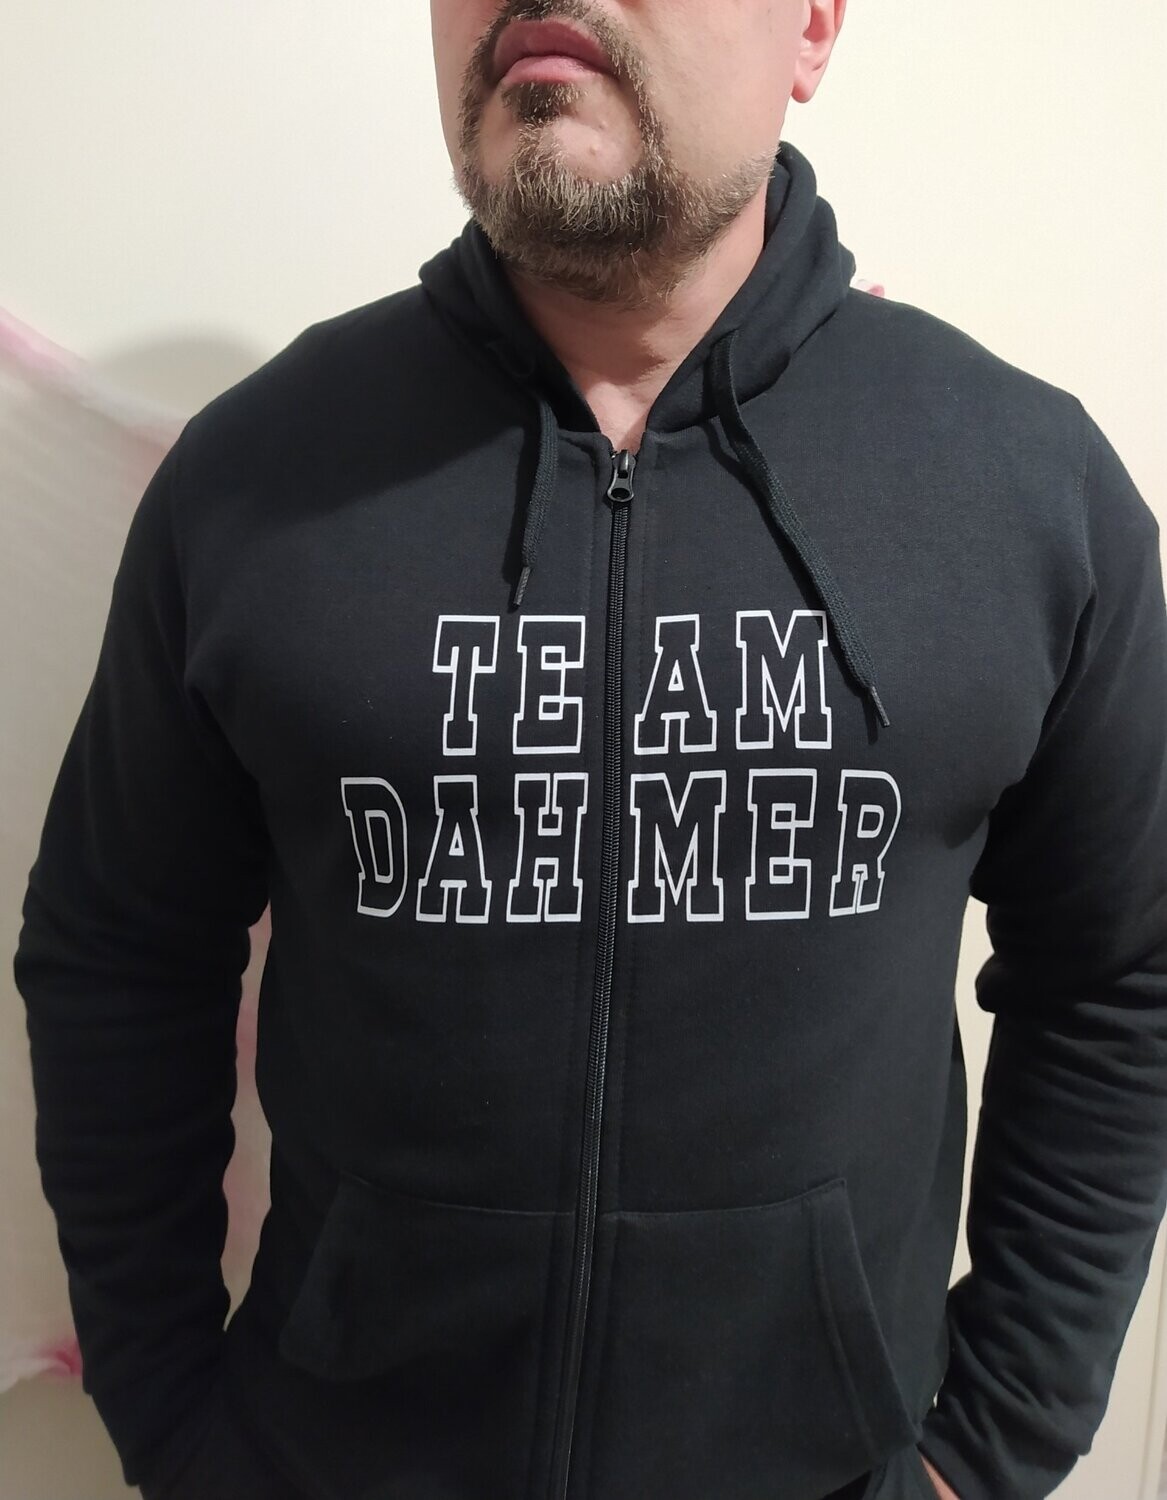 Team Dahmer zip-up hoodie